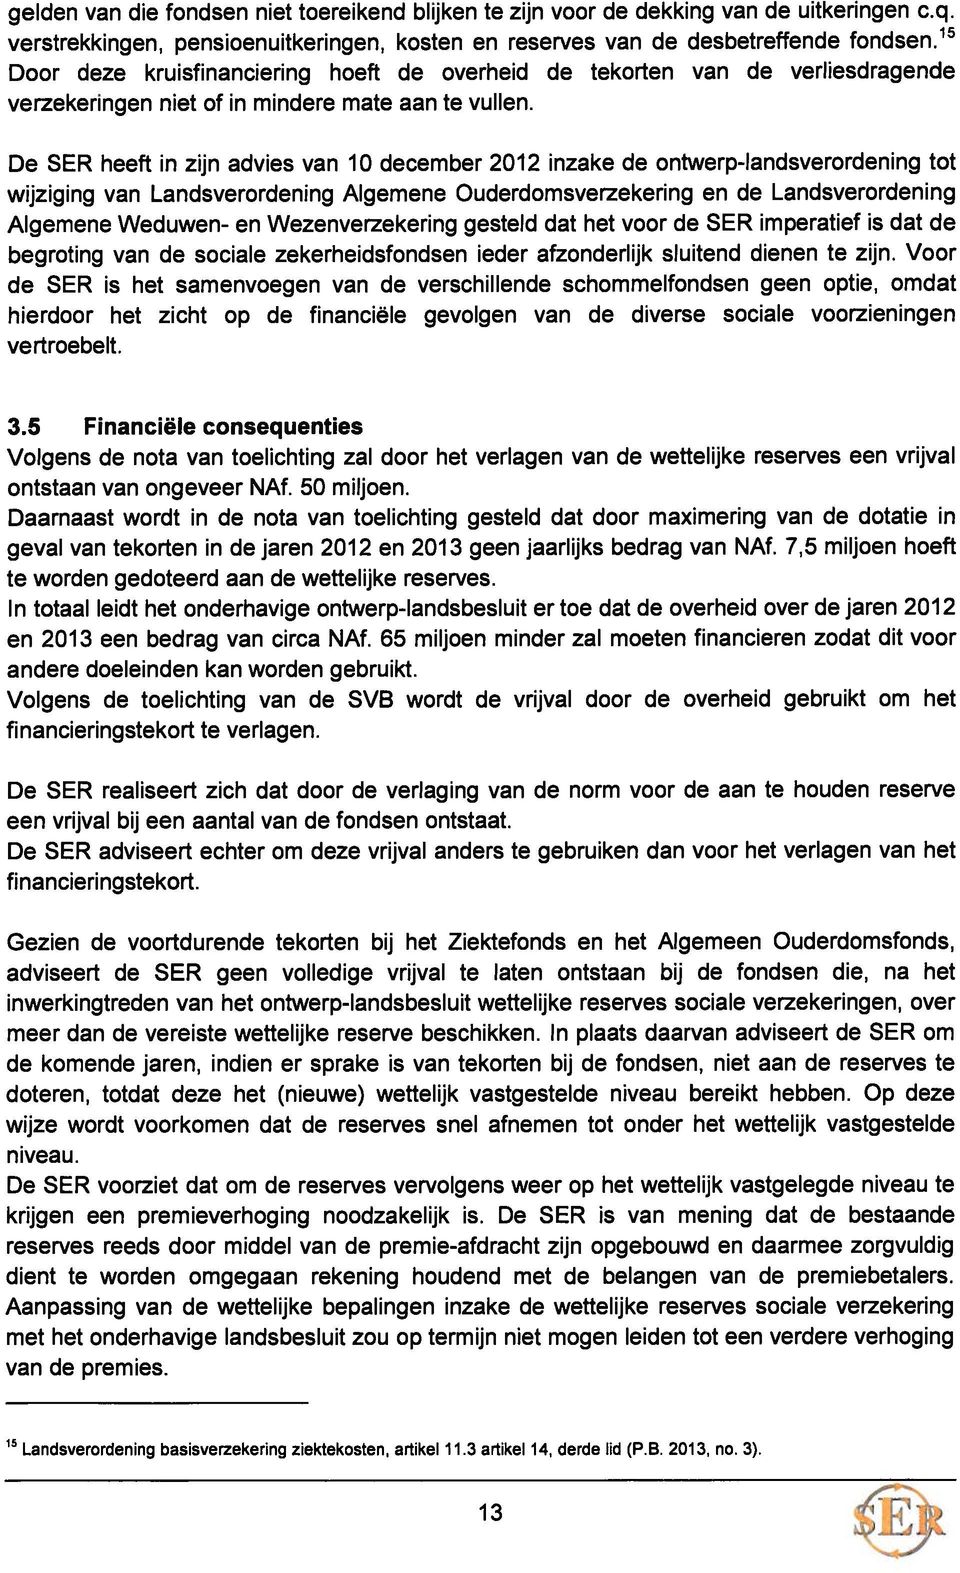 De SER heeft in zijn advies van 10 december 2012 inzake de ontwerp-iandsverordening tot wijziging van Landsverordening Algemene Ouderdomsverzekering en de Landsverordening Algemene Weduwen- en